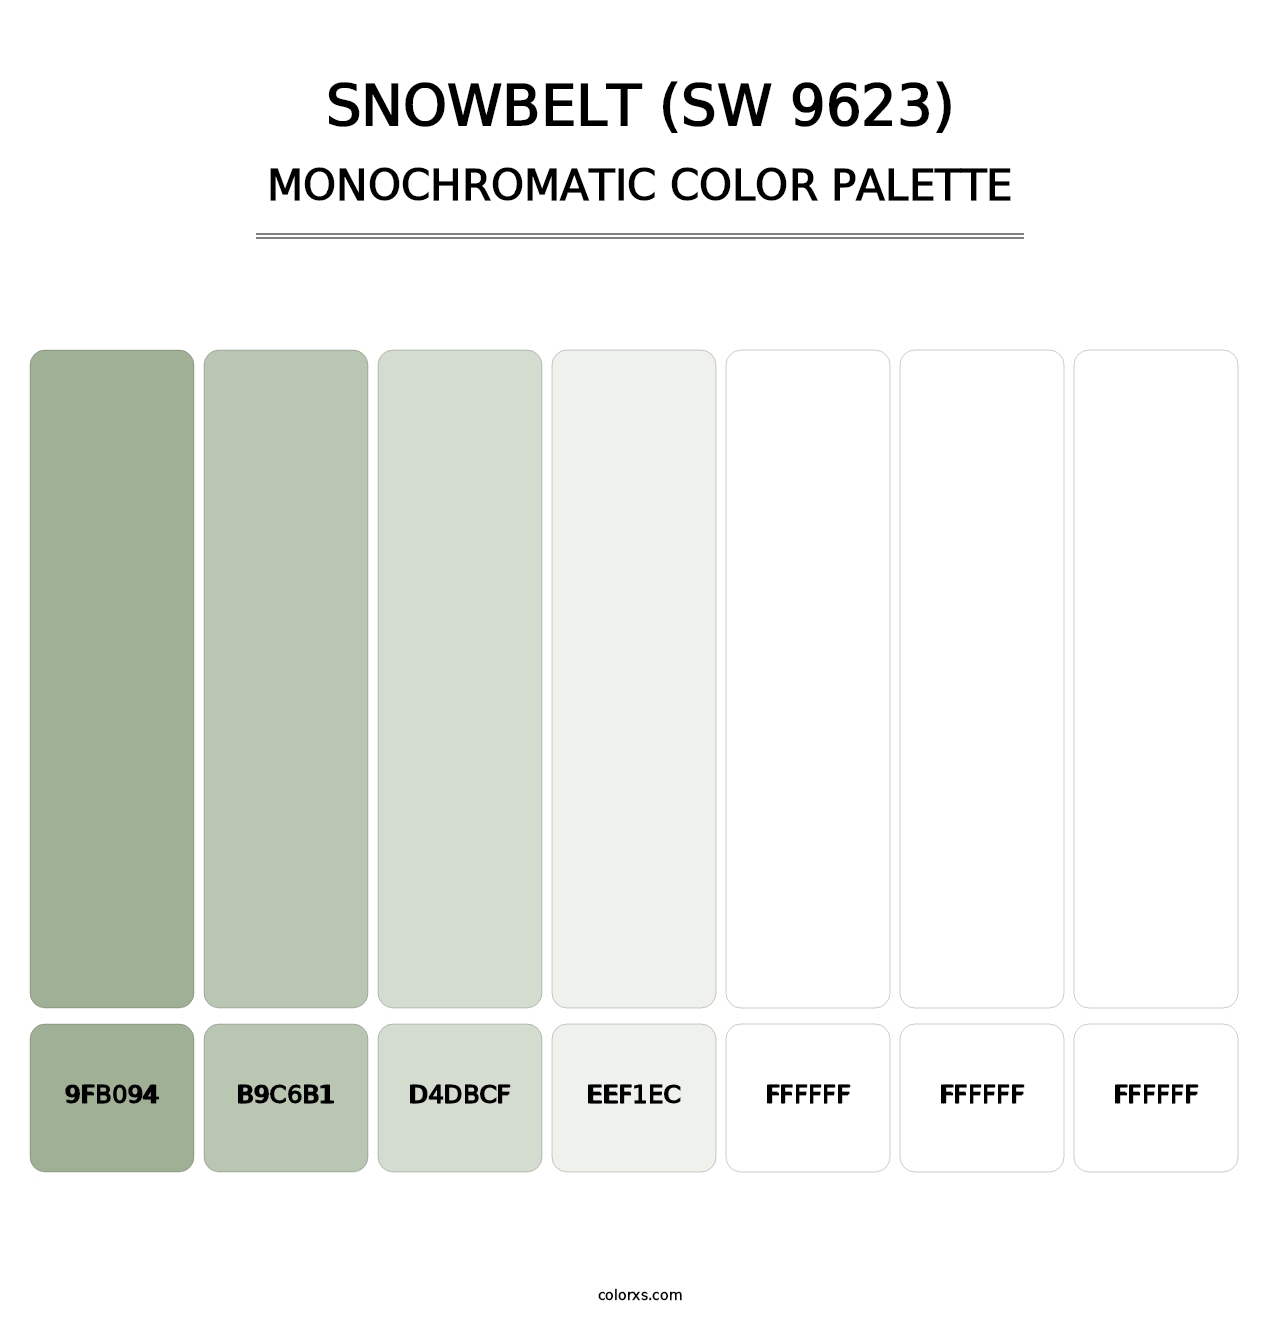 Snowbelt (SW 9623) - Monochromatic Color Palette